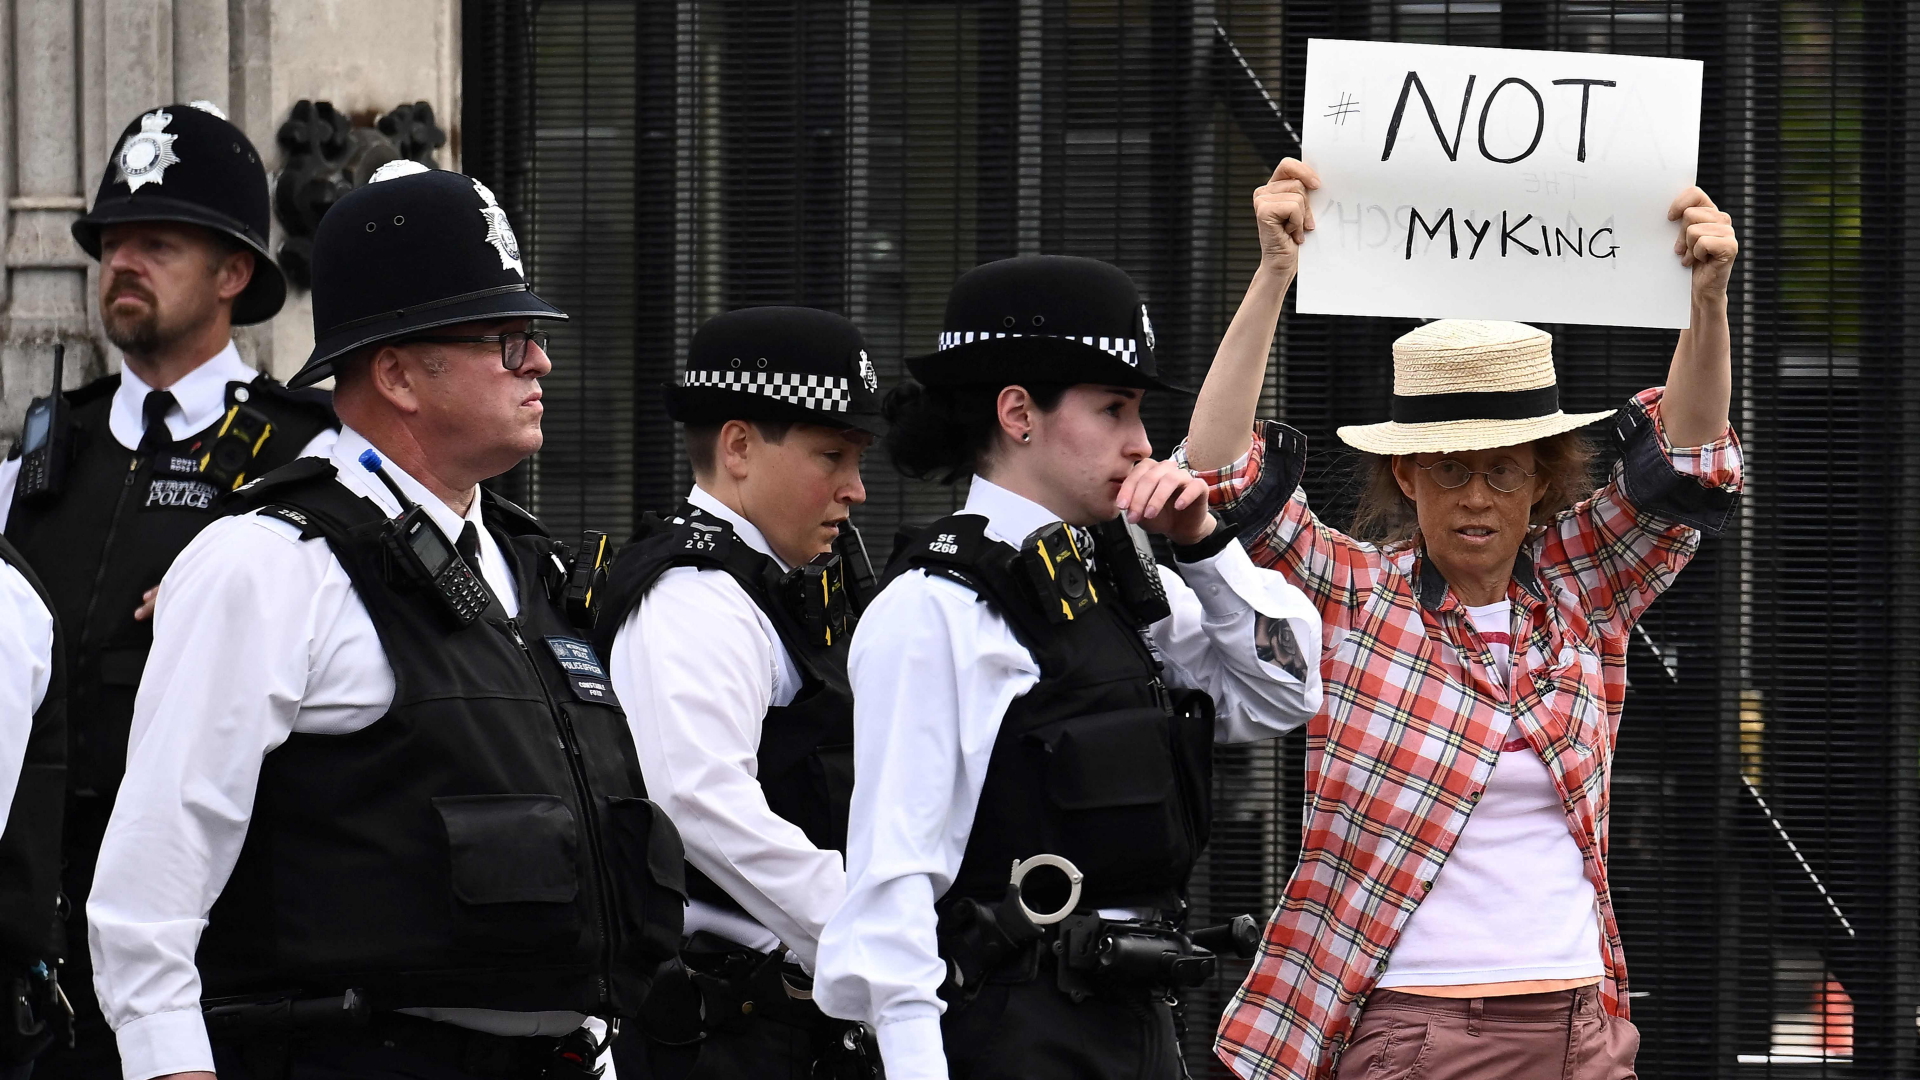 Eine Gegnerin der Monarchie hält ein Plakat, auf dem "Not my King" steht | AFP